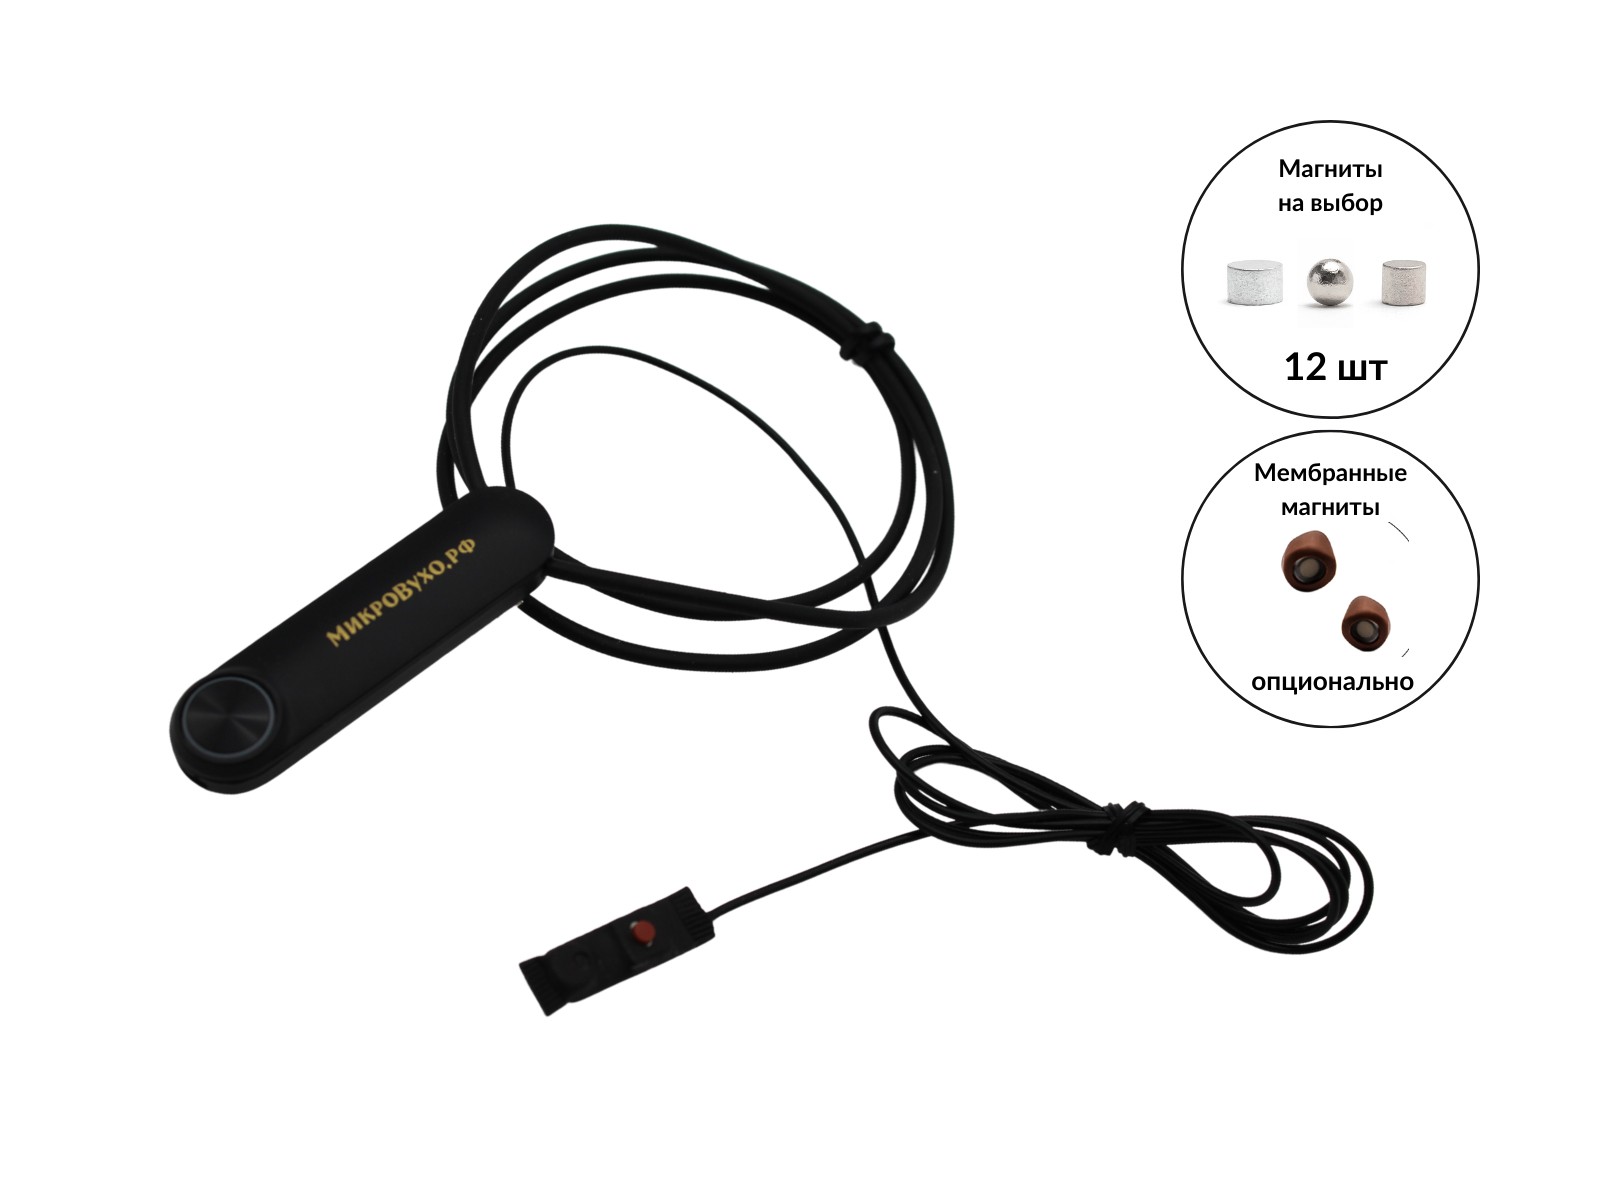 Гарнитура Bluetooth Standard с магнитными микронаушниками 2 мм - изображение 2